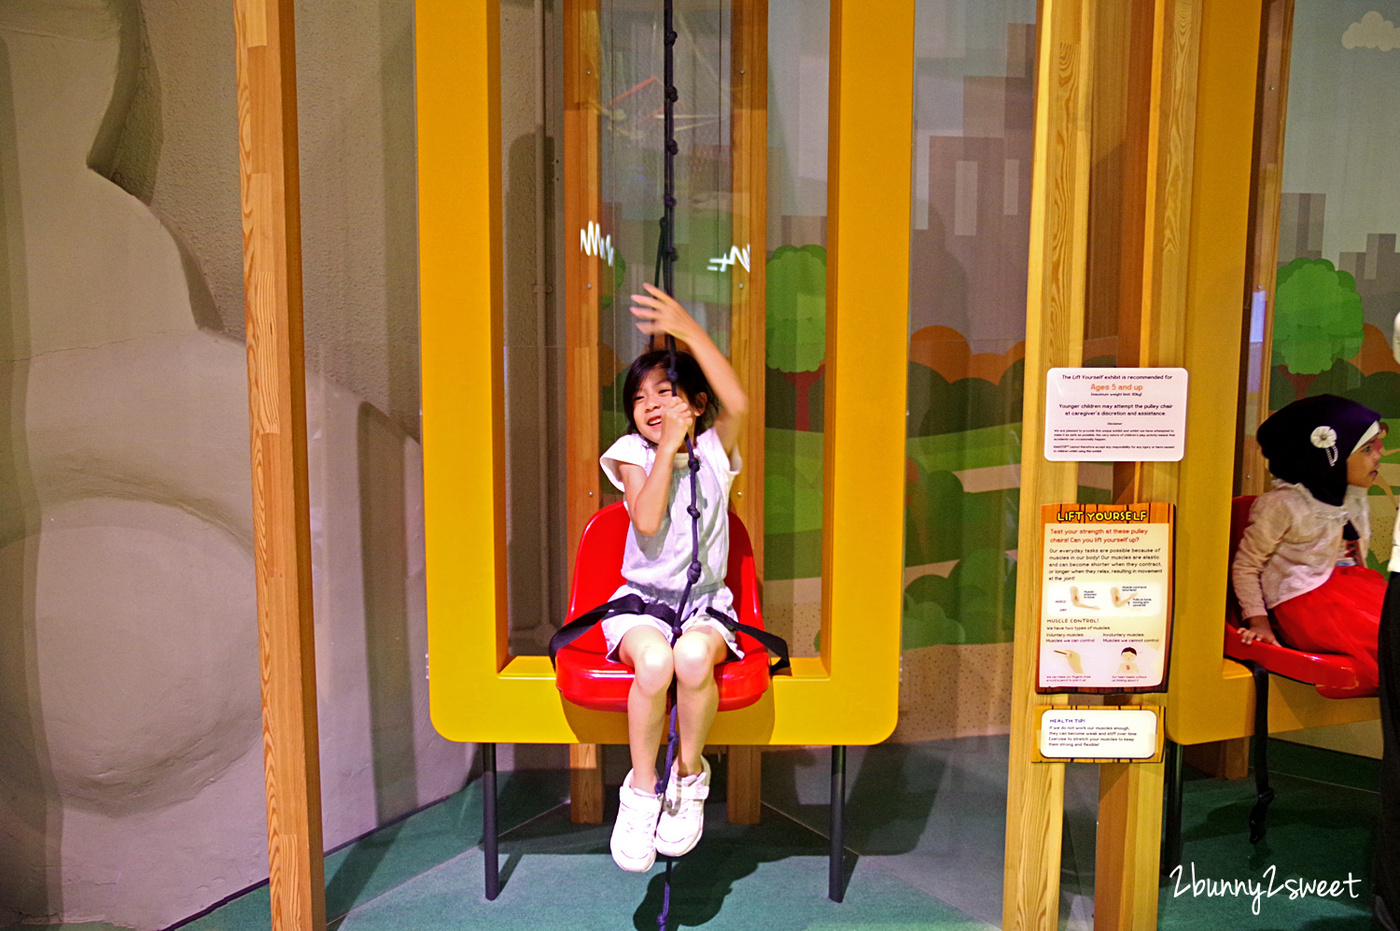 新加坡親子景點》Kids Stop 兒童科學館~雲朵攀爬網、大 J 垂直溜滑梯、恐龍考古沙坑…邊玩邊學自然科學知識的室內樂園 @兔兒毛毛姊妹花